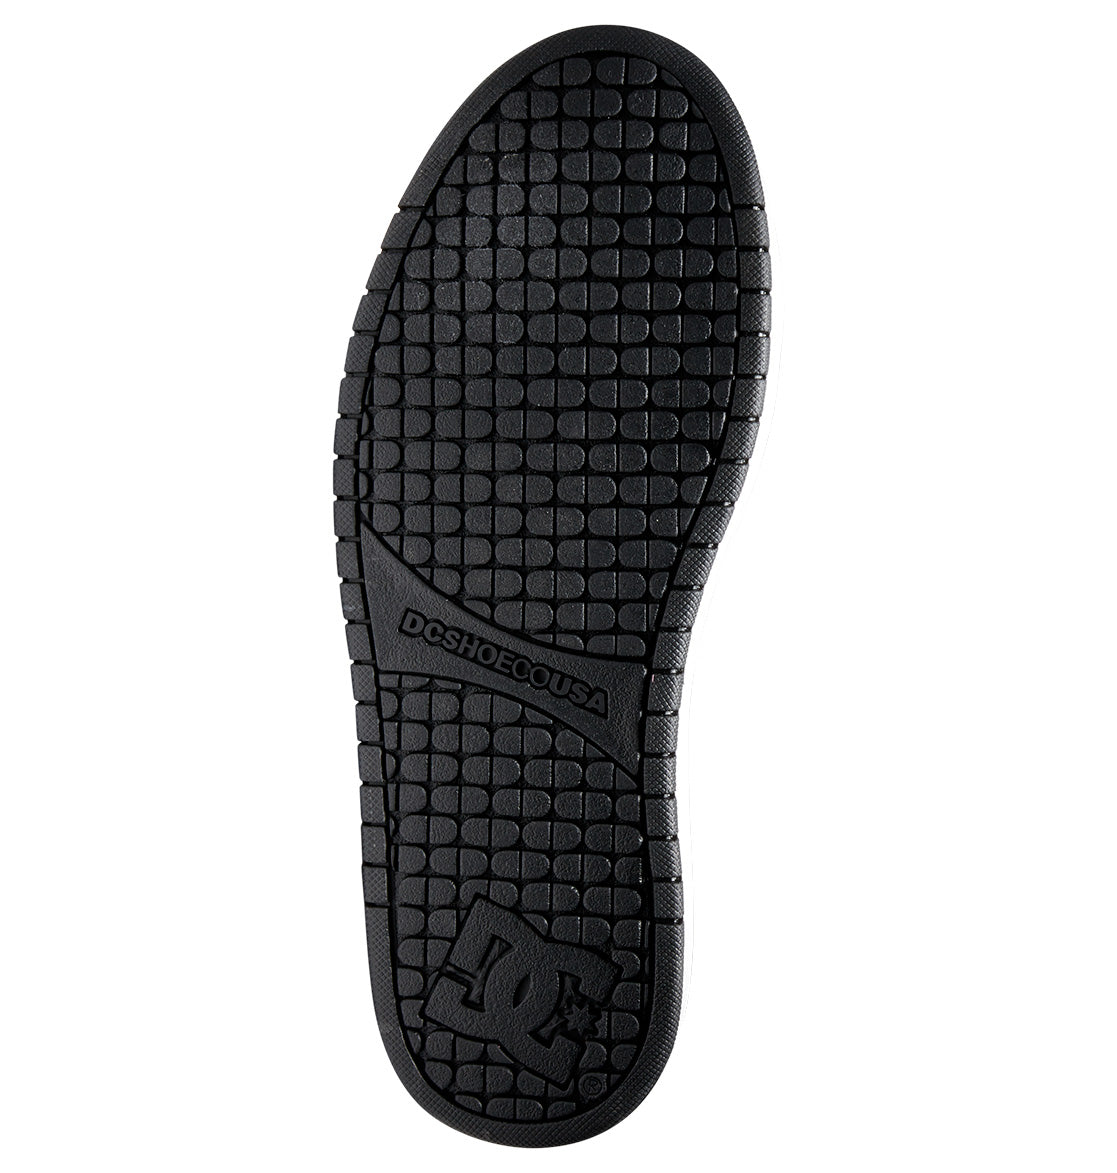 Men&#39;s Court Graffik Shoes - Black Camouflage